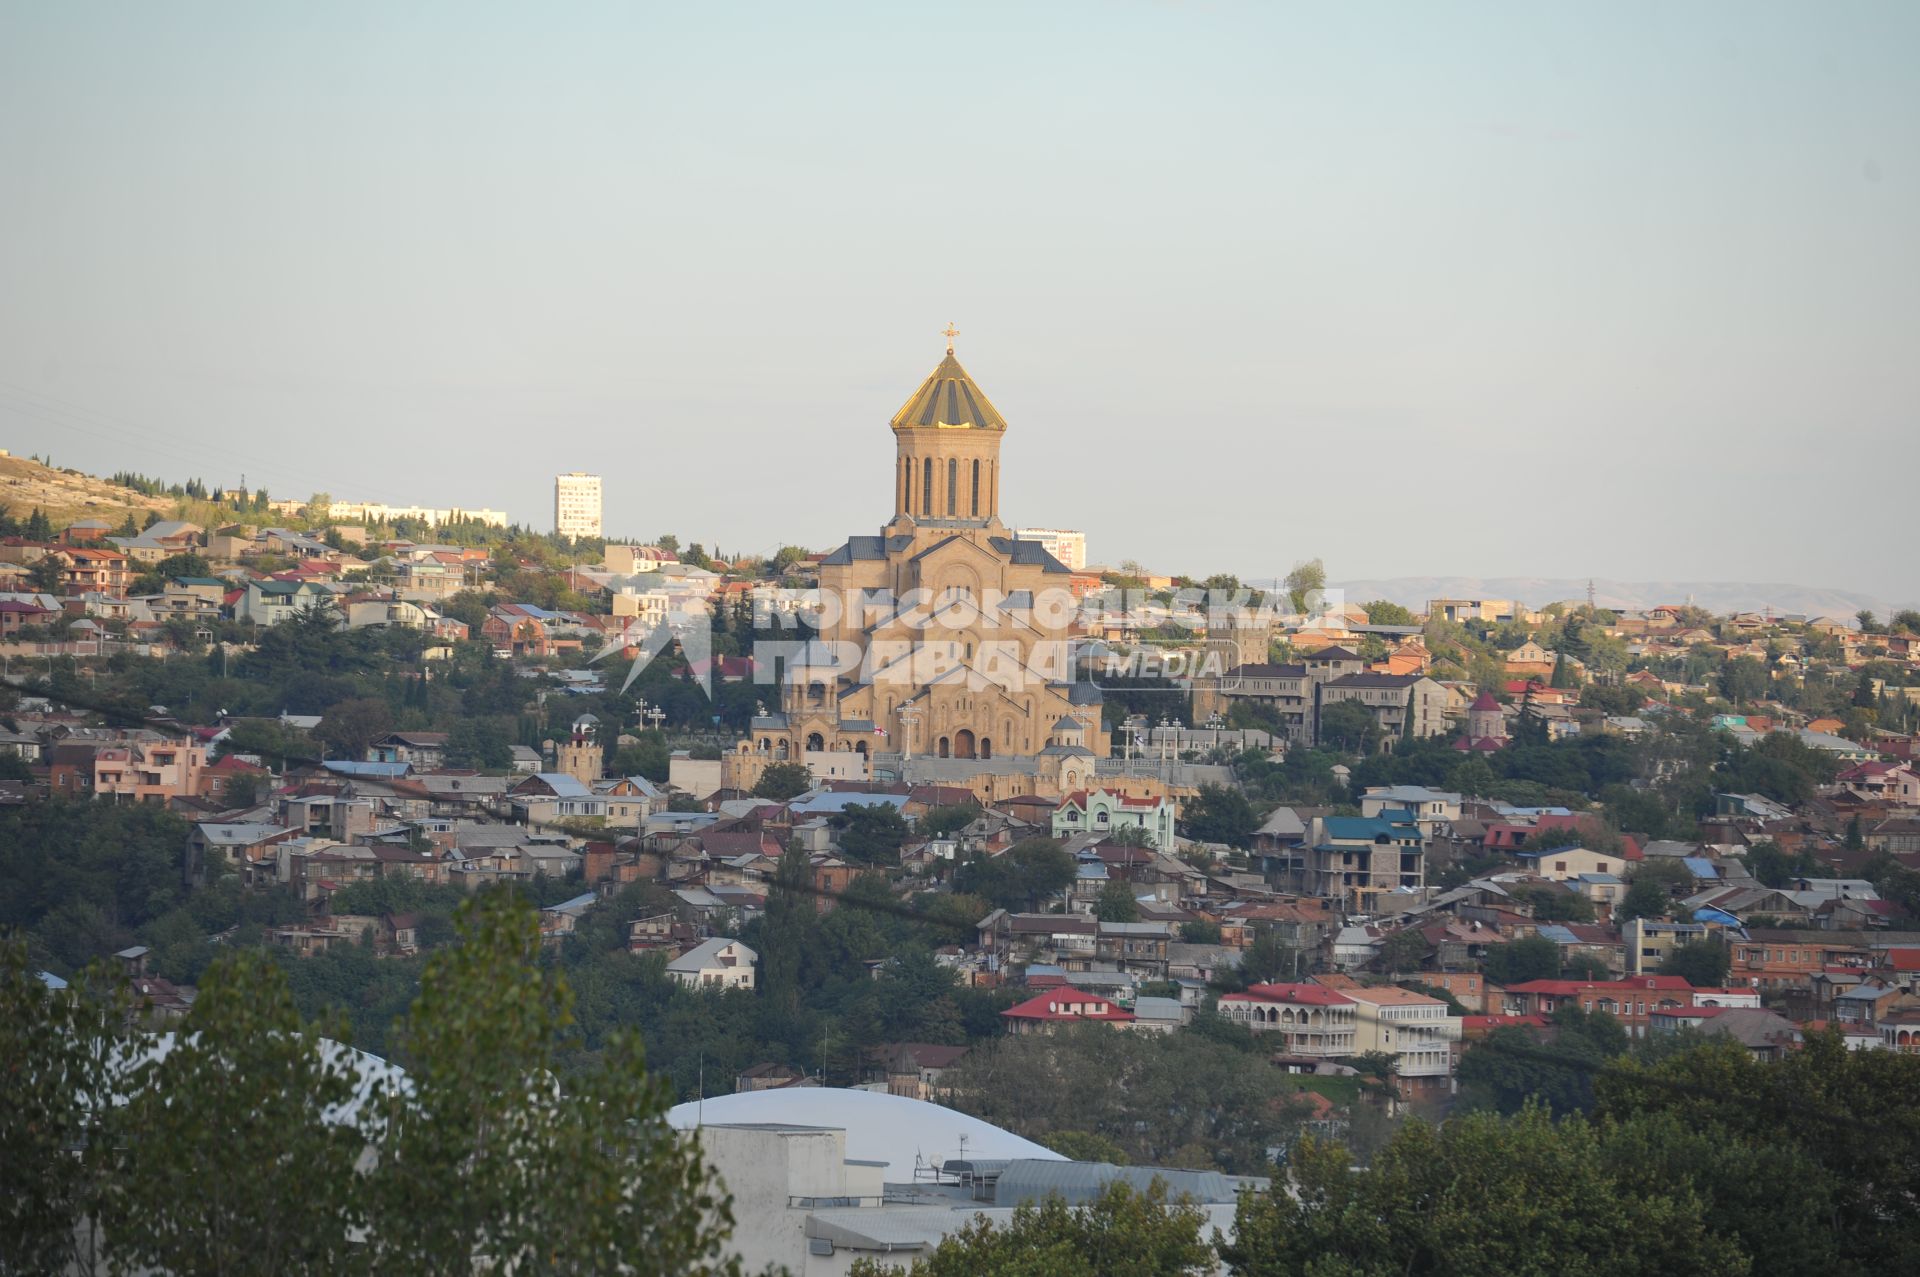 Виды Тбилиси. На снимке: главный кафедральный собор Грузинской православной церкви - Цминда Самеба  (Собор Святой Троицы) на холме св. Ильи.